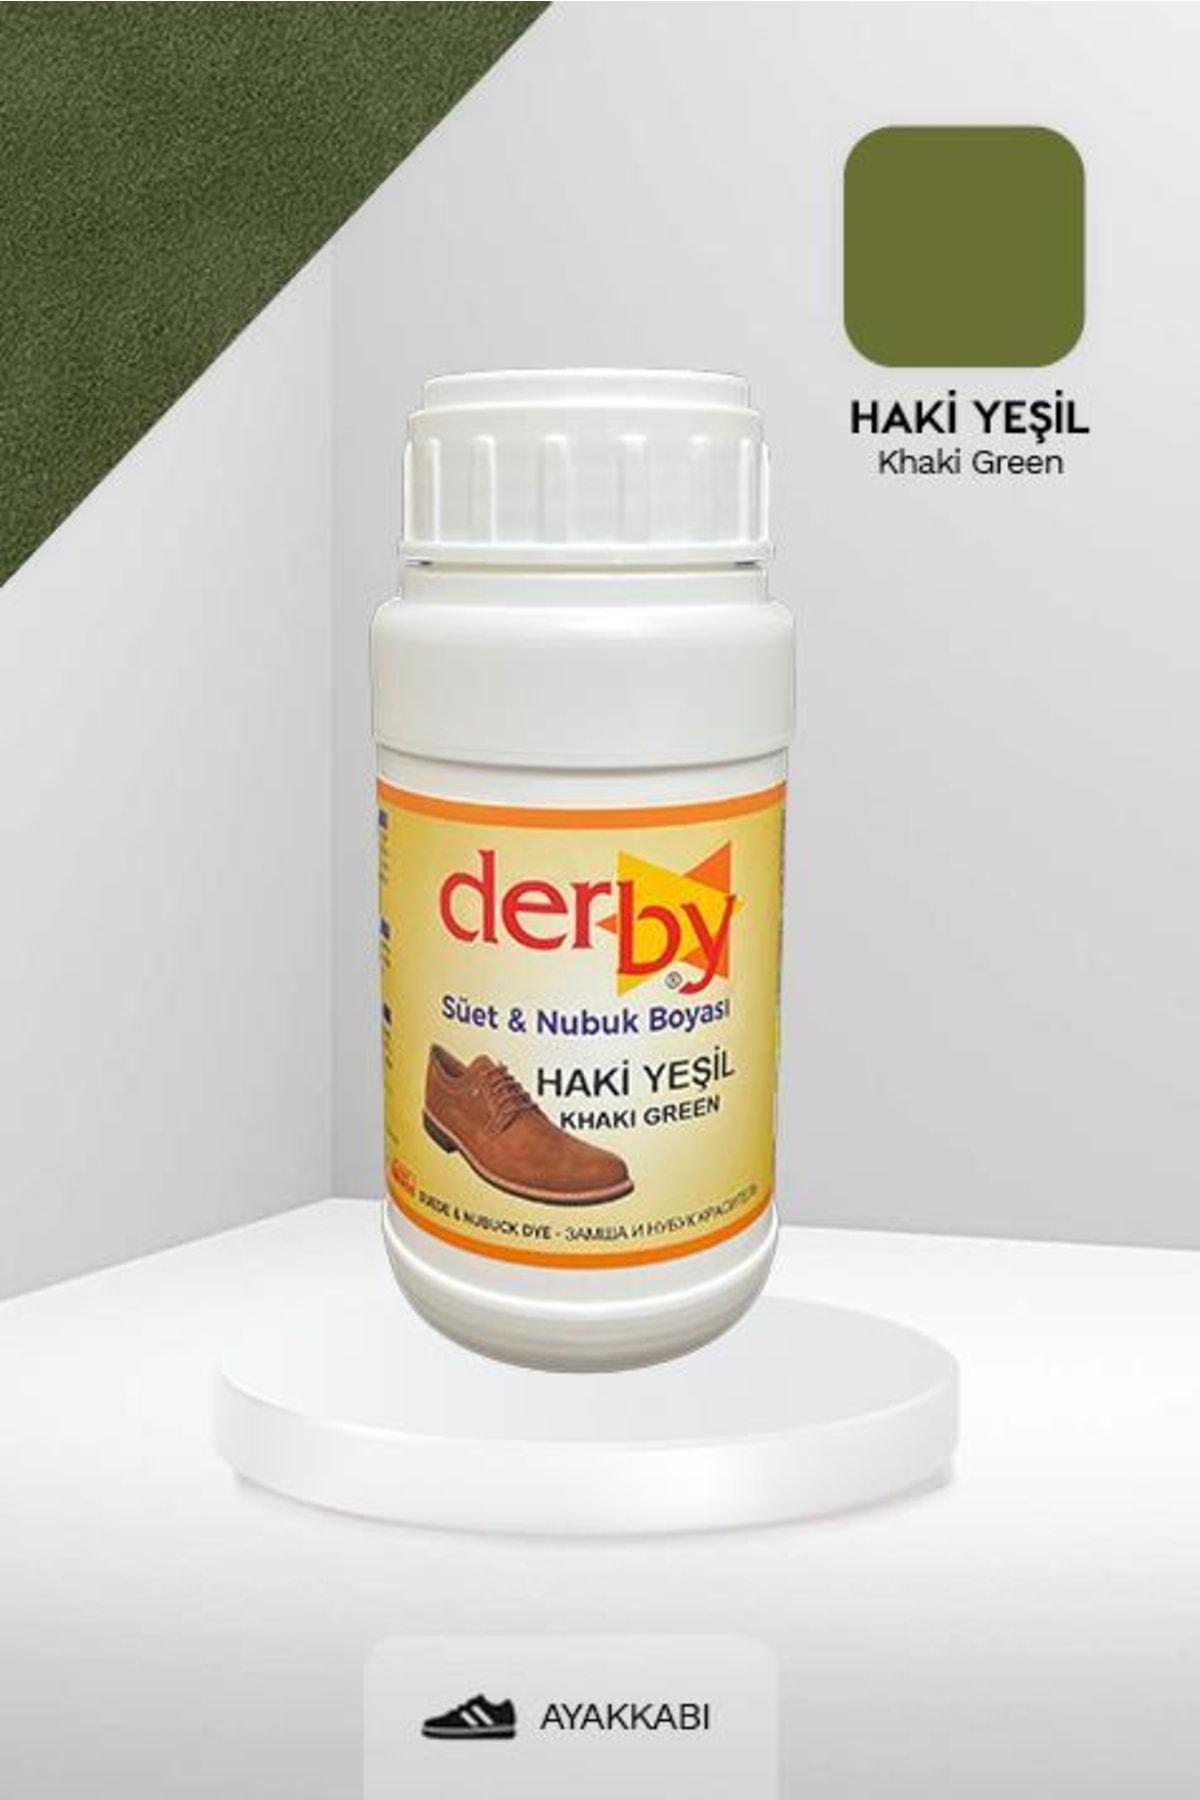 Derby Haki Yeşil Süet & Nubuk Deri Boyası 250 mL / Süet Nubuk Ayakkabı Boyası